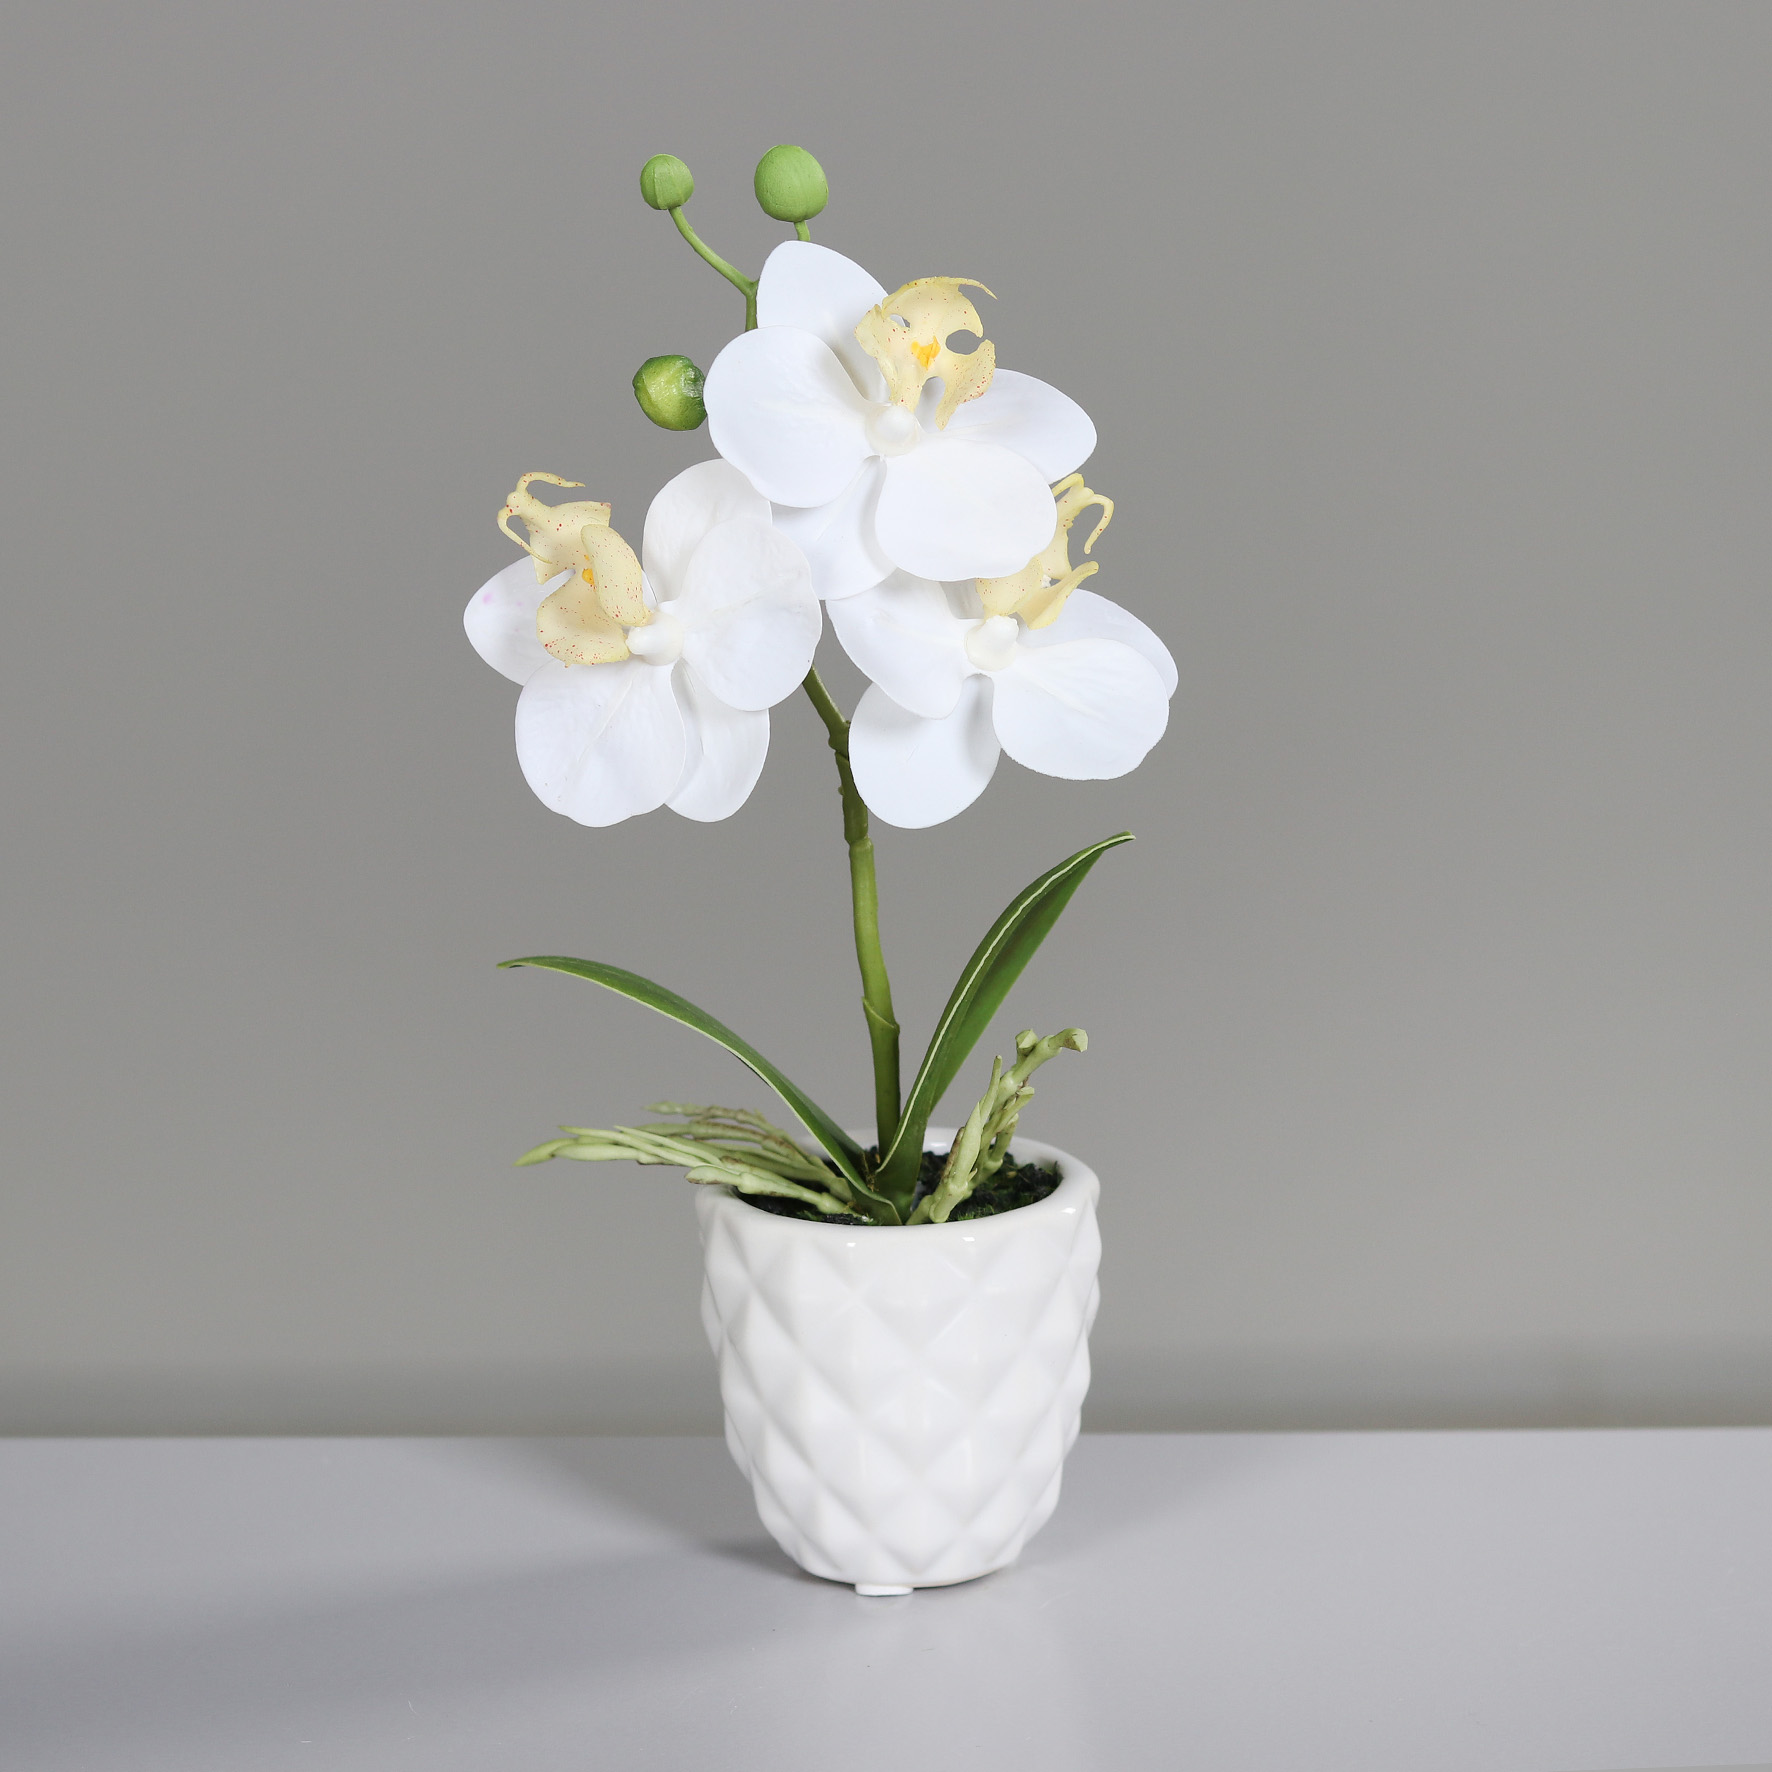 Mini Orchidee Real Touch 24cm weiß im weißen Keramiktopf DP künstliche Blumen Orchideen Kunstpflanze